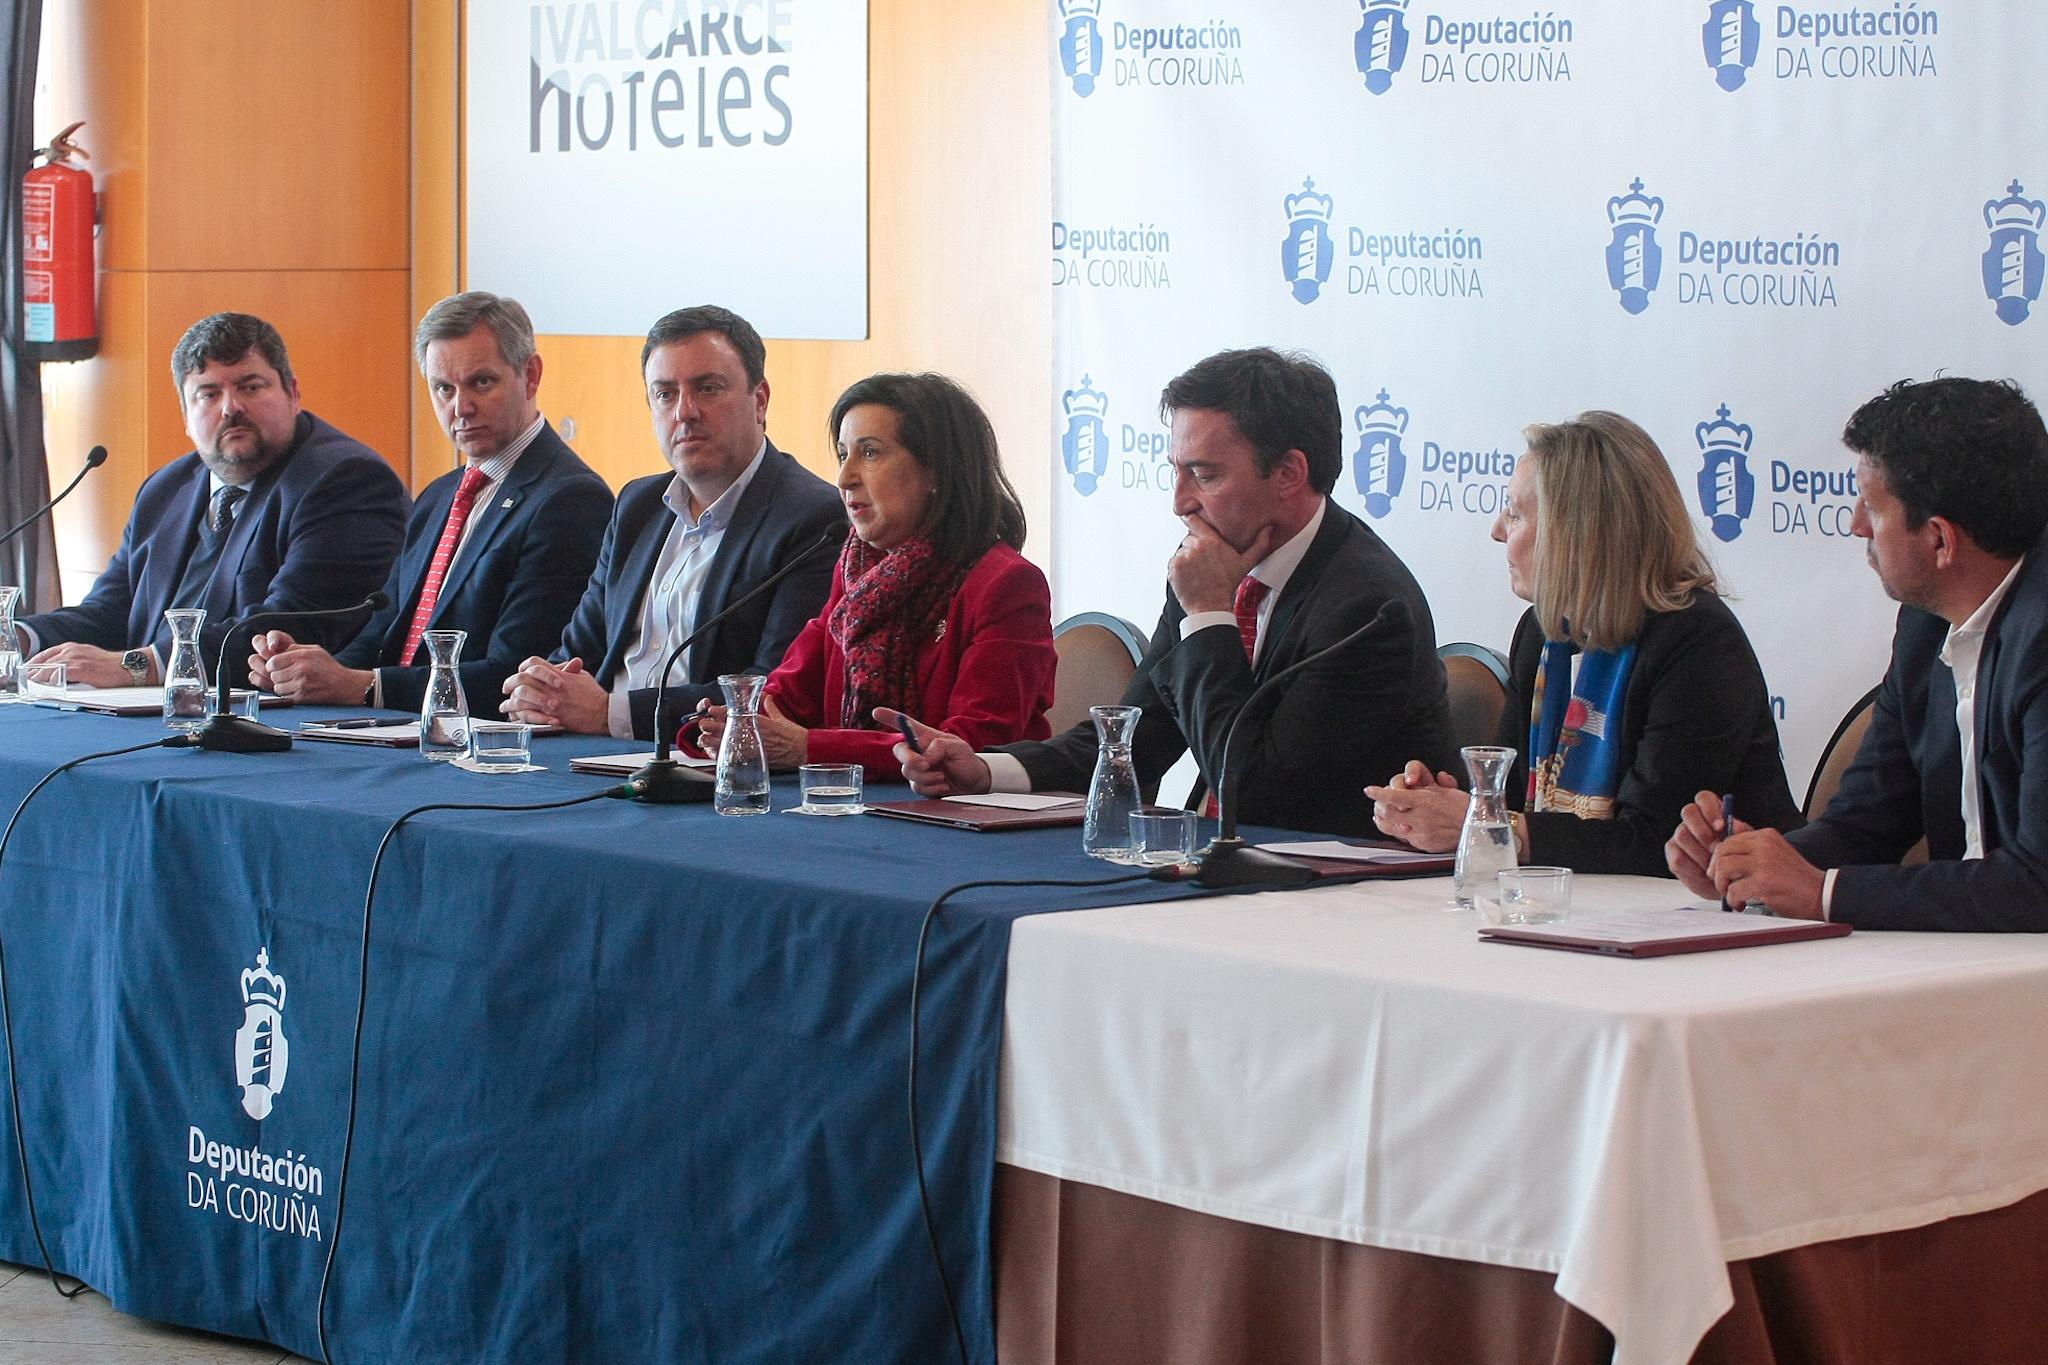 Robles, en el centro, durante la reunión en el Hotel Valcarce de Narón. Imagen: Diputación de A Coruña